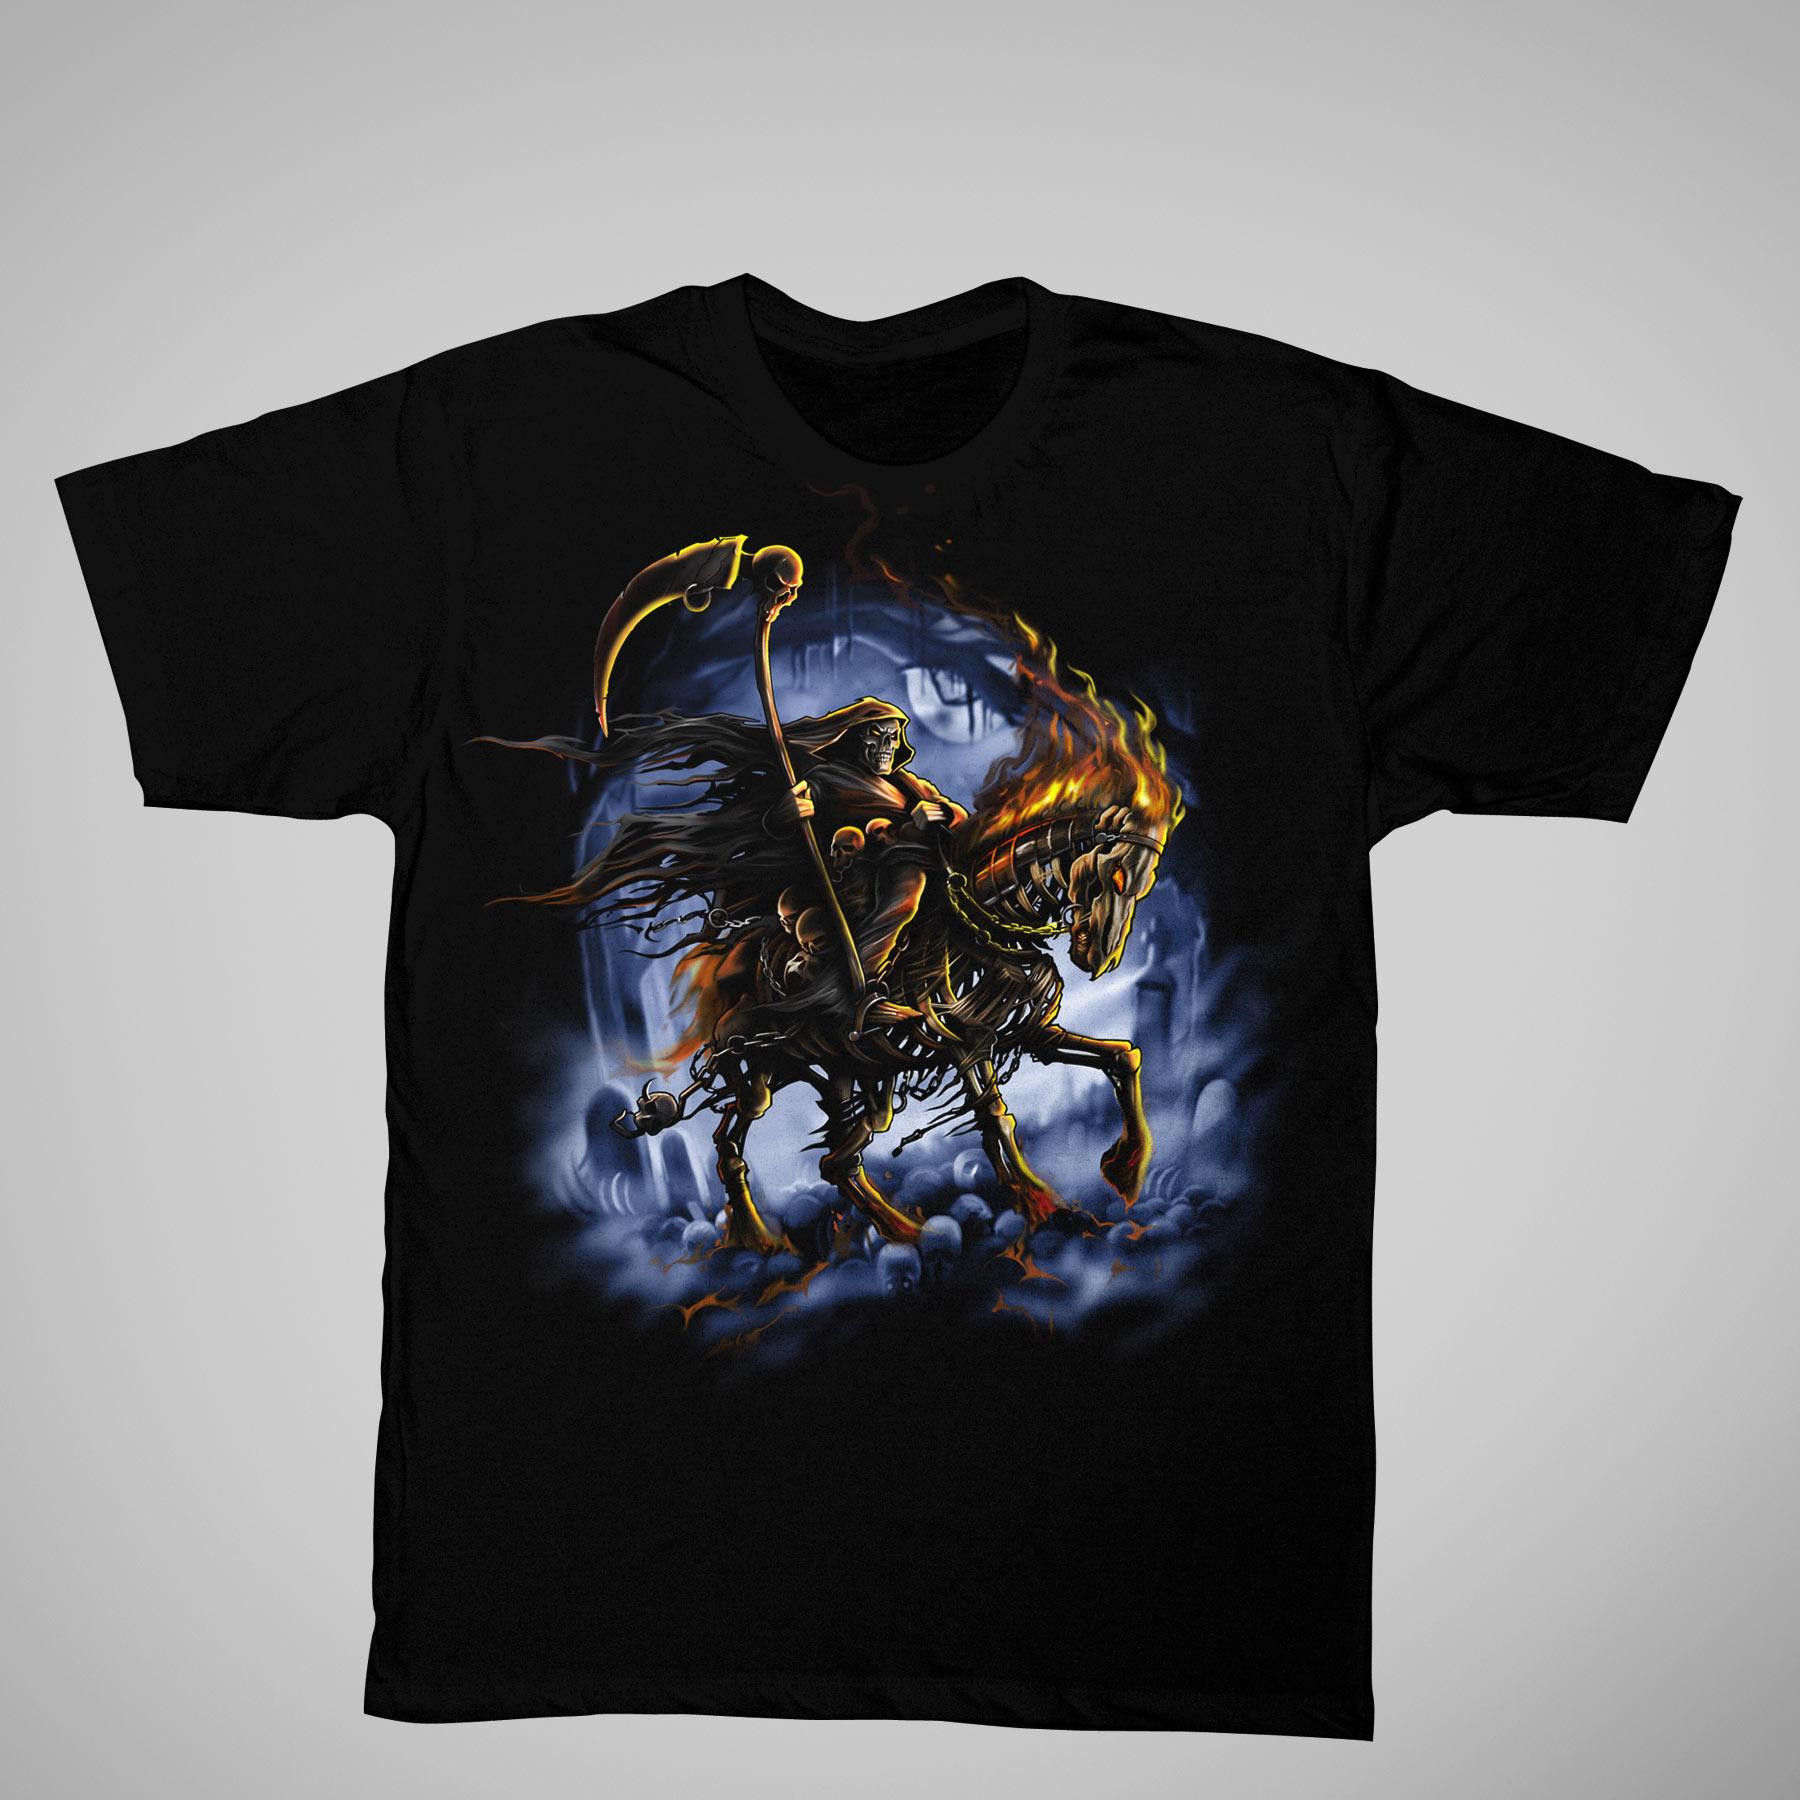 Men's Graphic T-Shirt - Reaper On Horseback